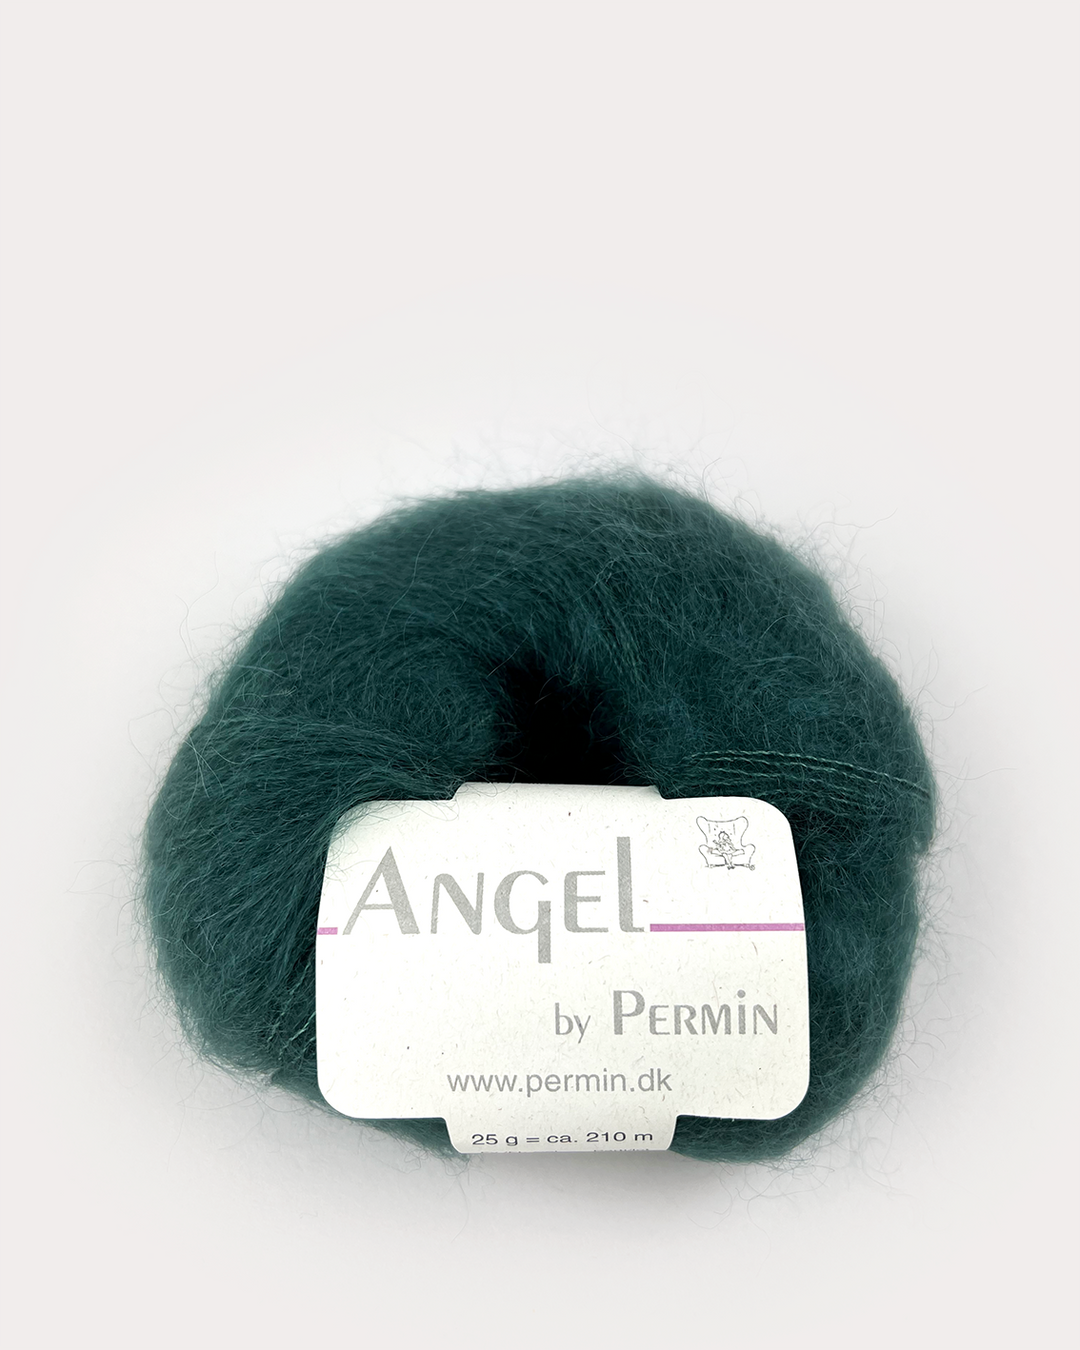 Angel - 884170 flaskegrøn